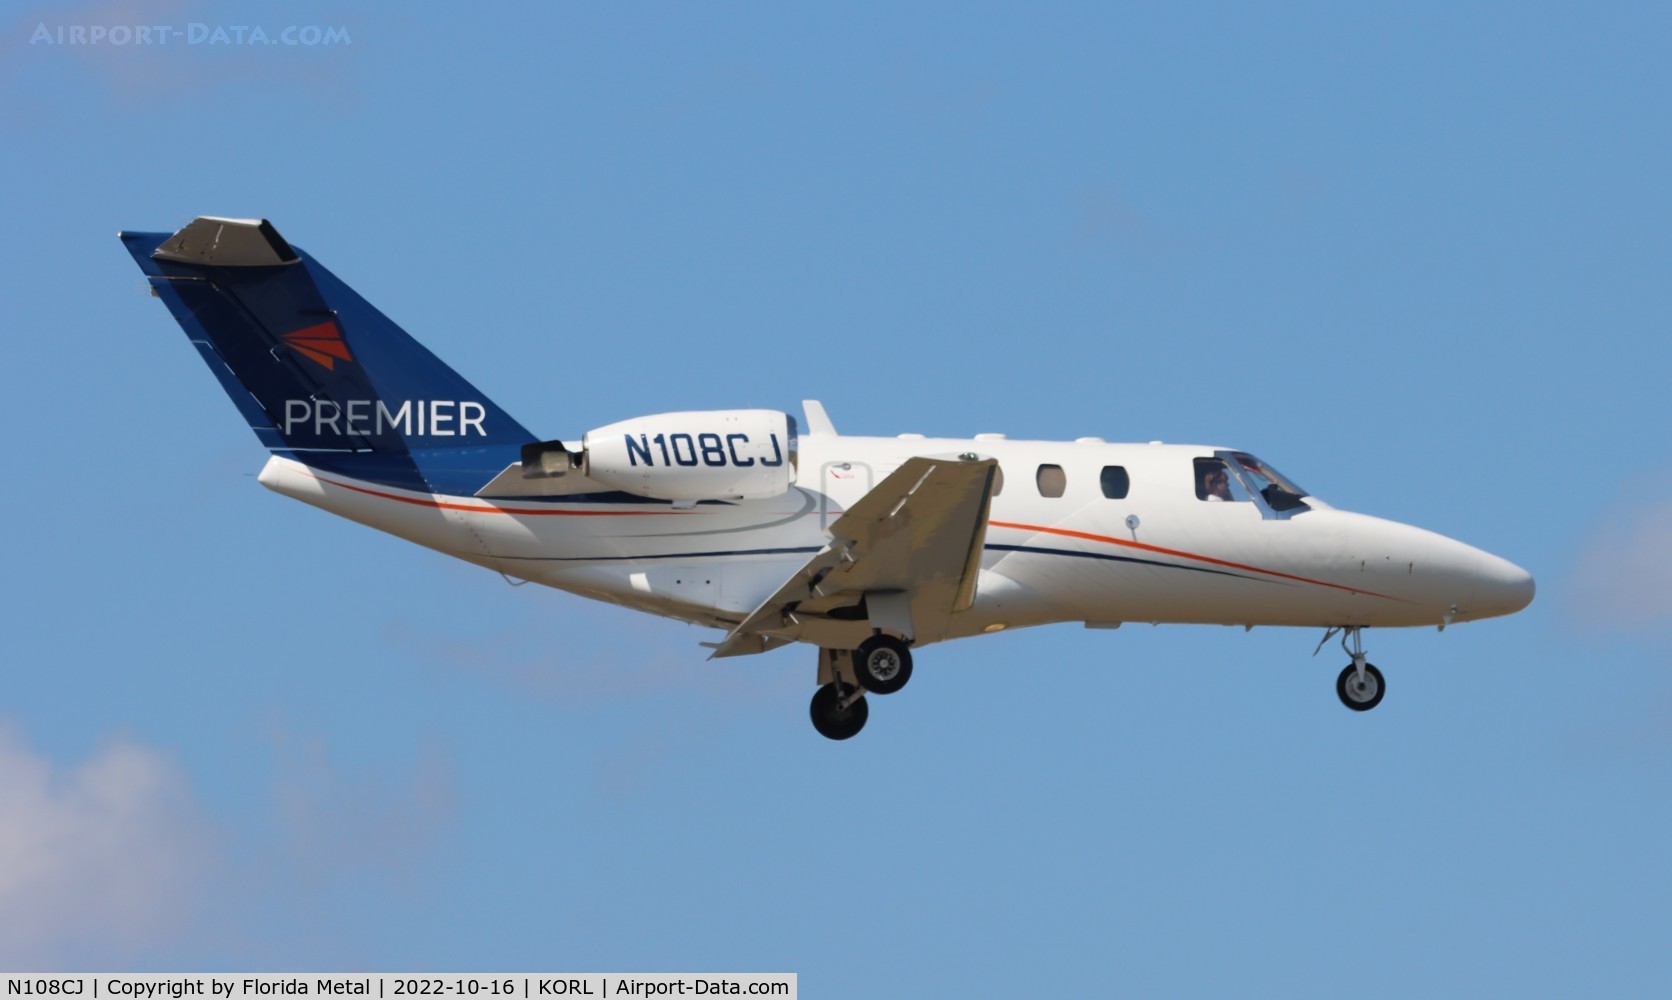 N108CJ, 1995 Cessna 525 CitationJet C/N 525-0108, C525 zx